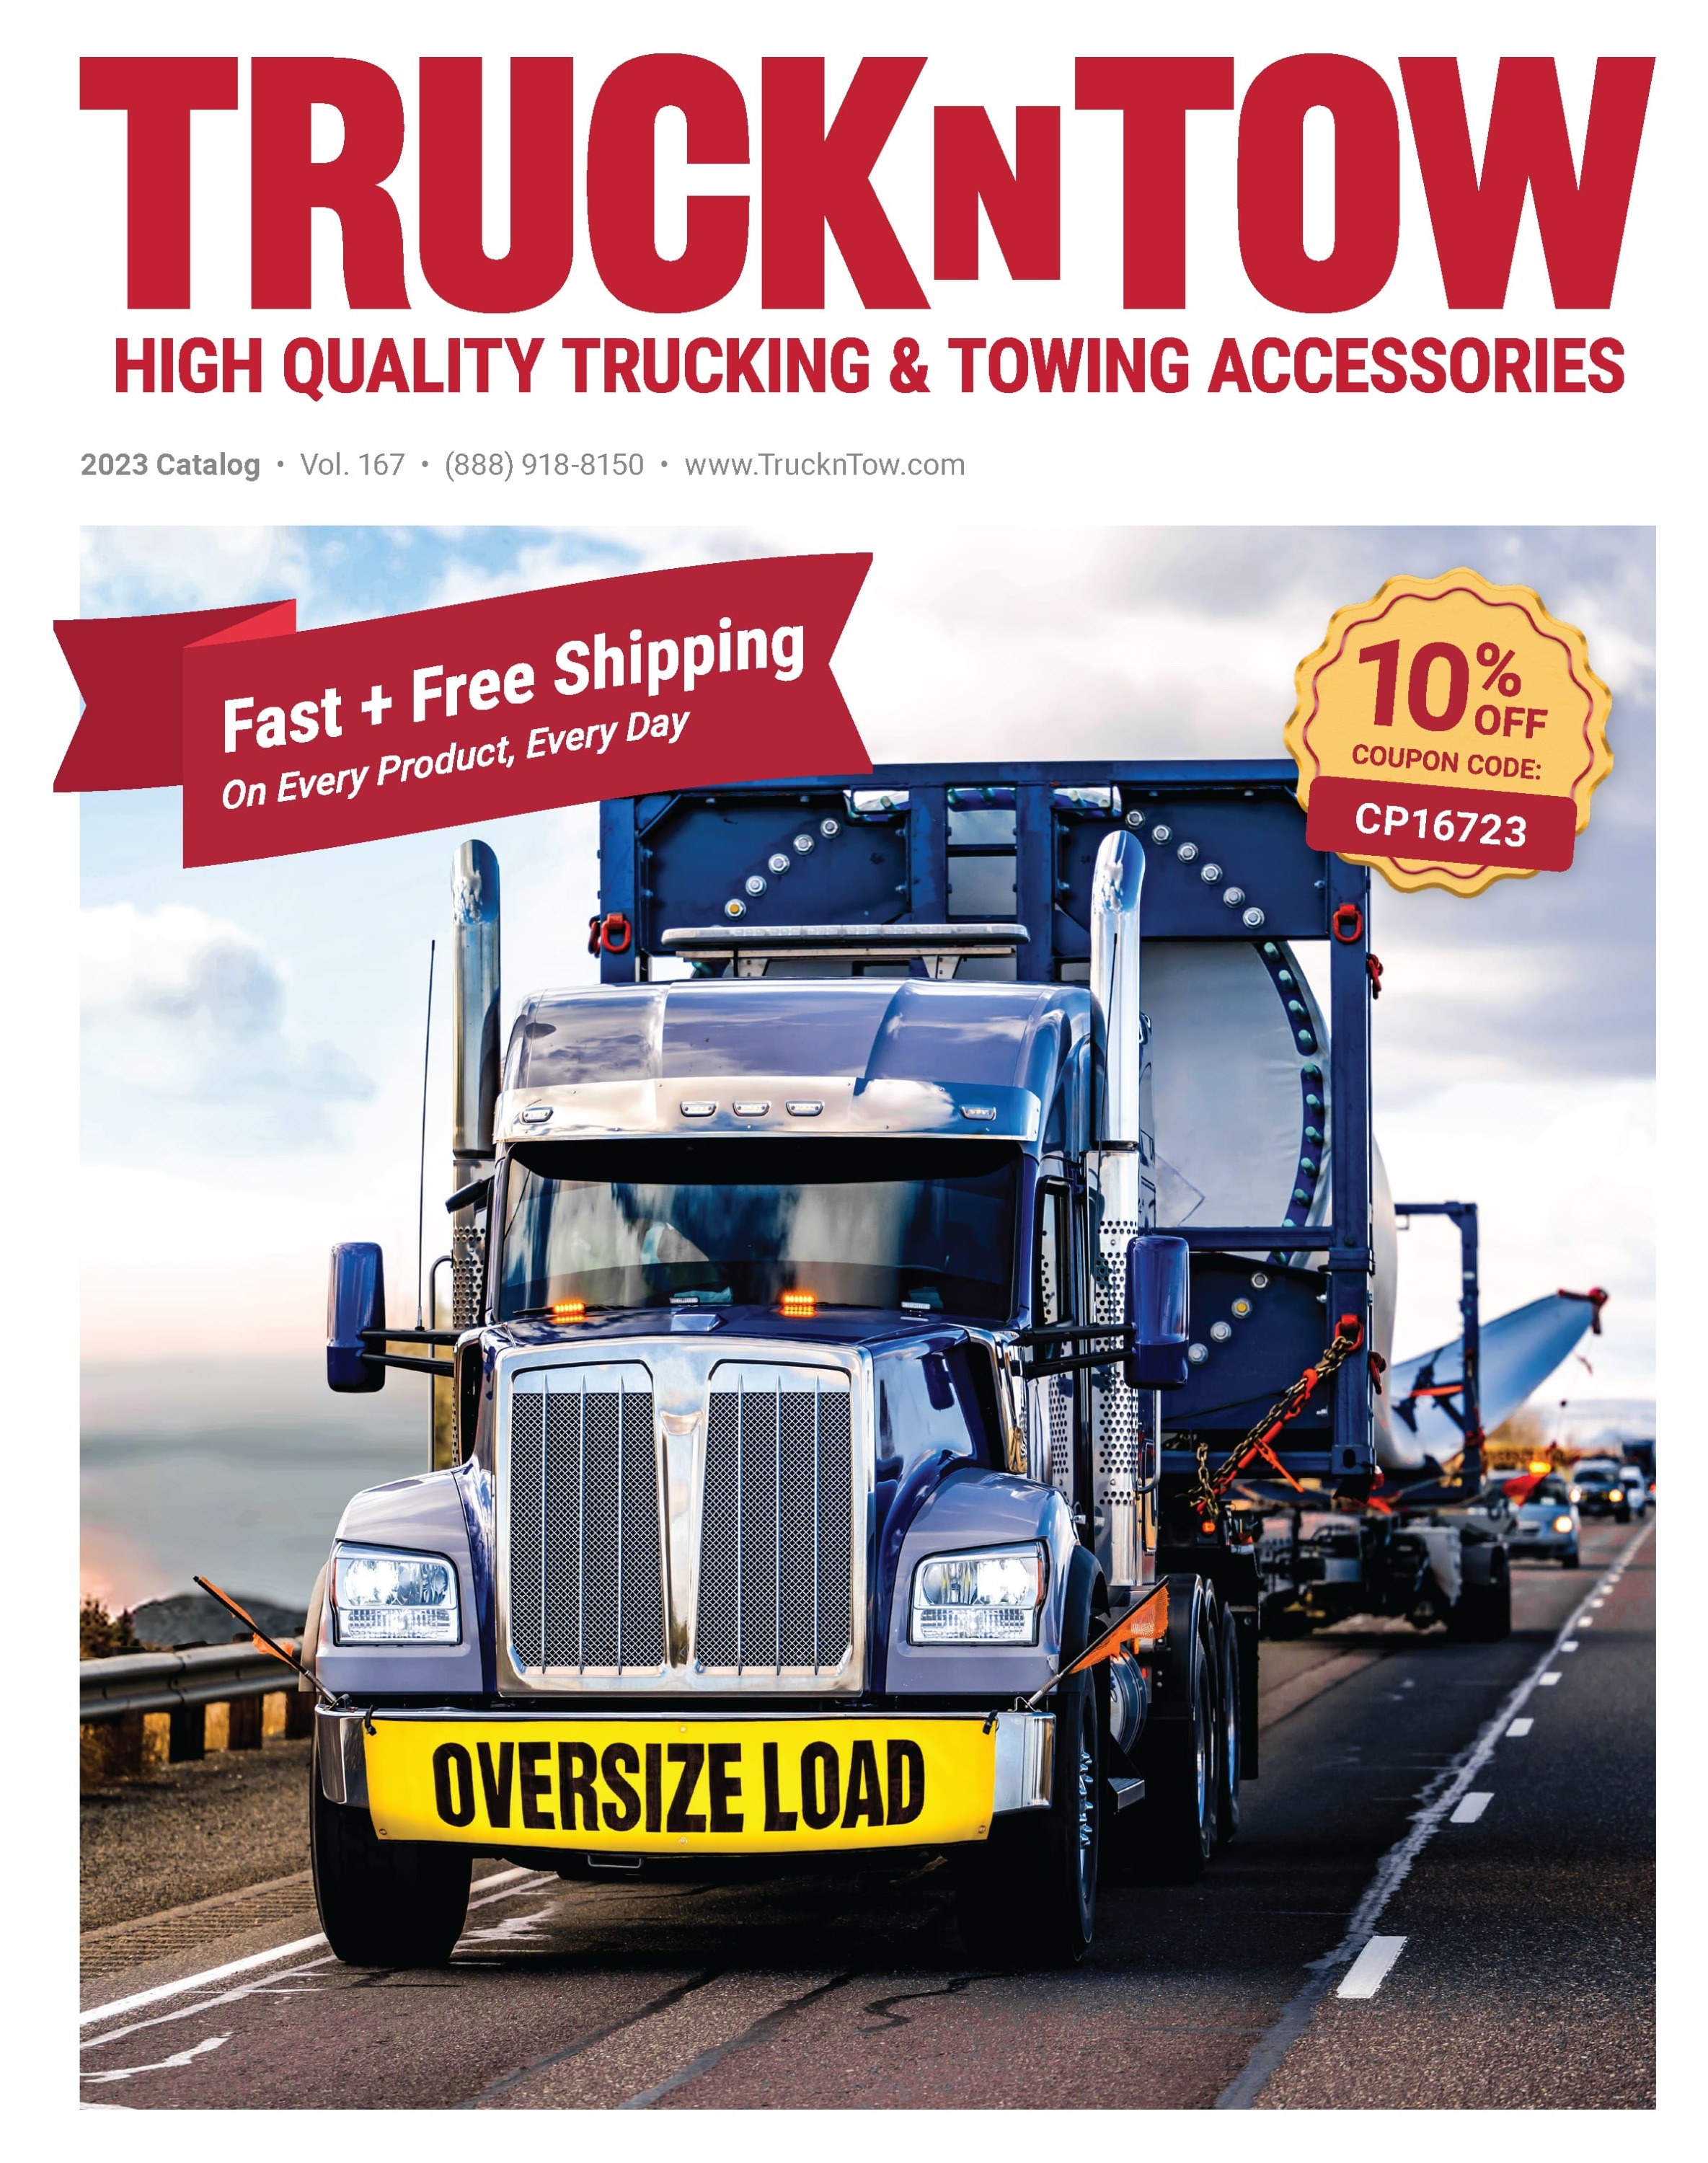 https://www.truckntow.com/media/wysiwyg/cms/catalog/banner1.jpg